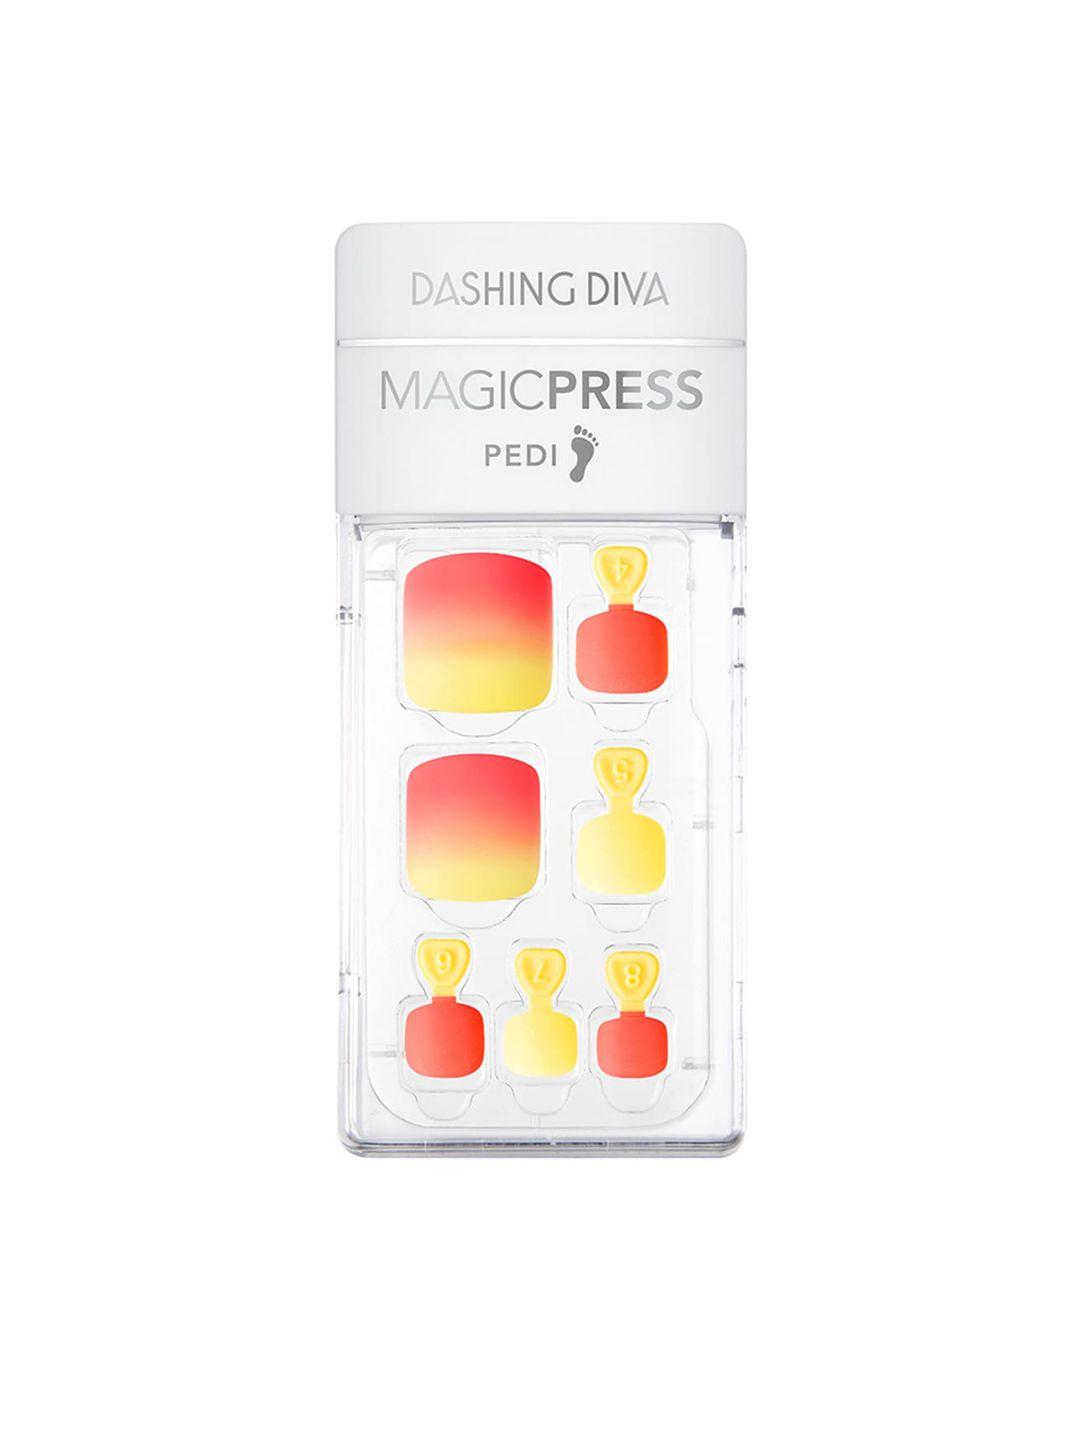 dashing diva magicpress peach mojito press on gel artificial nails